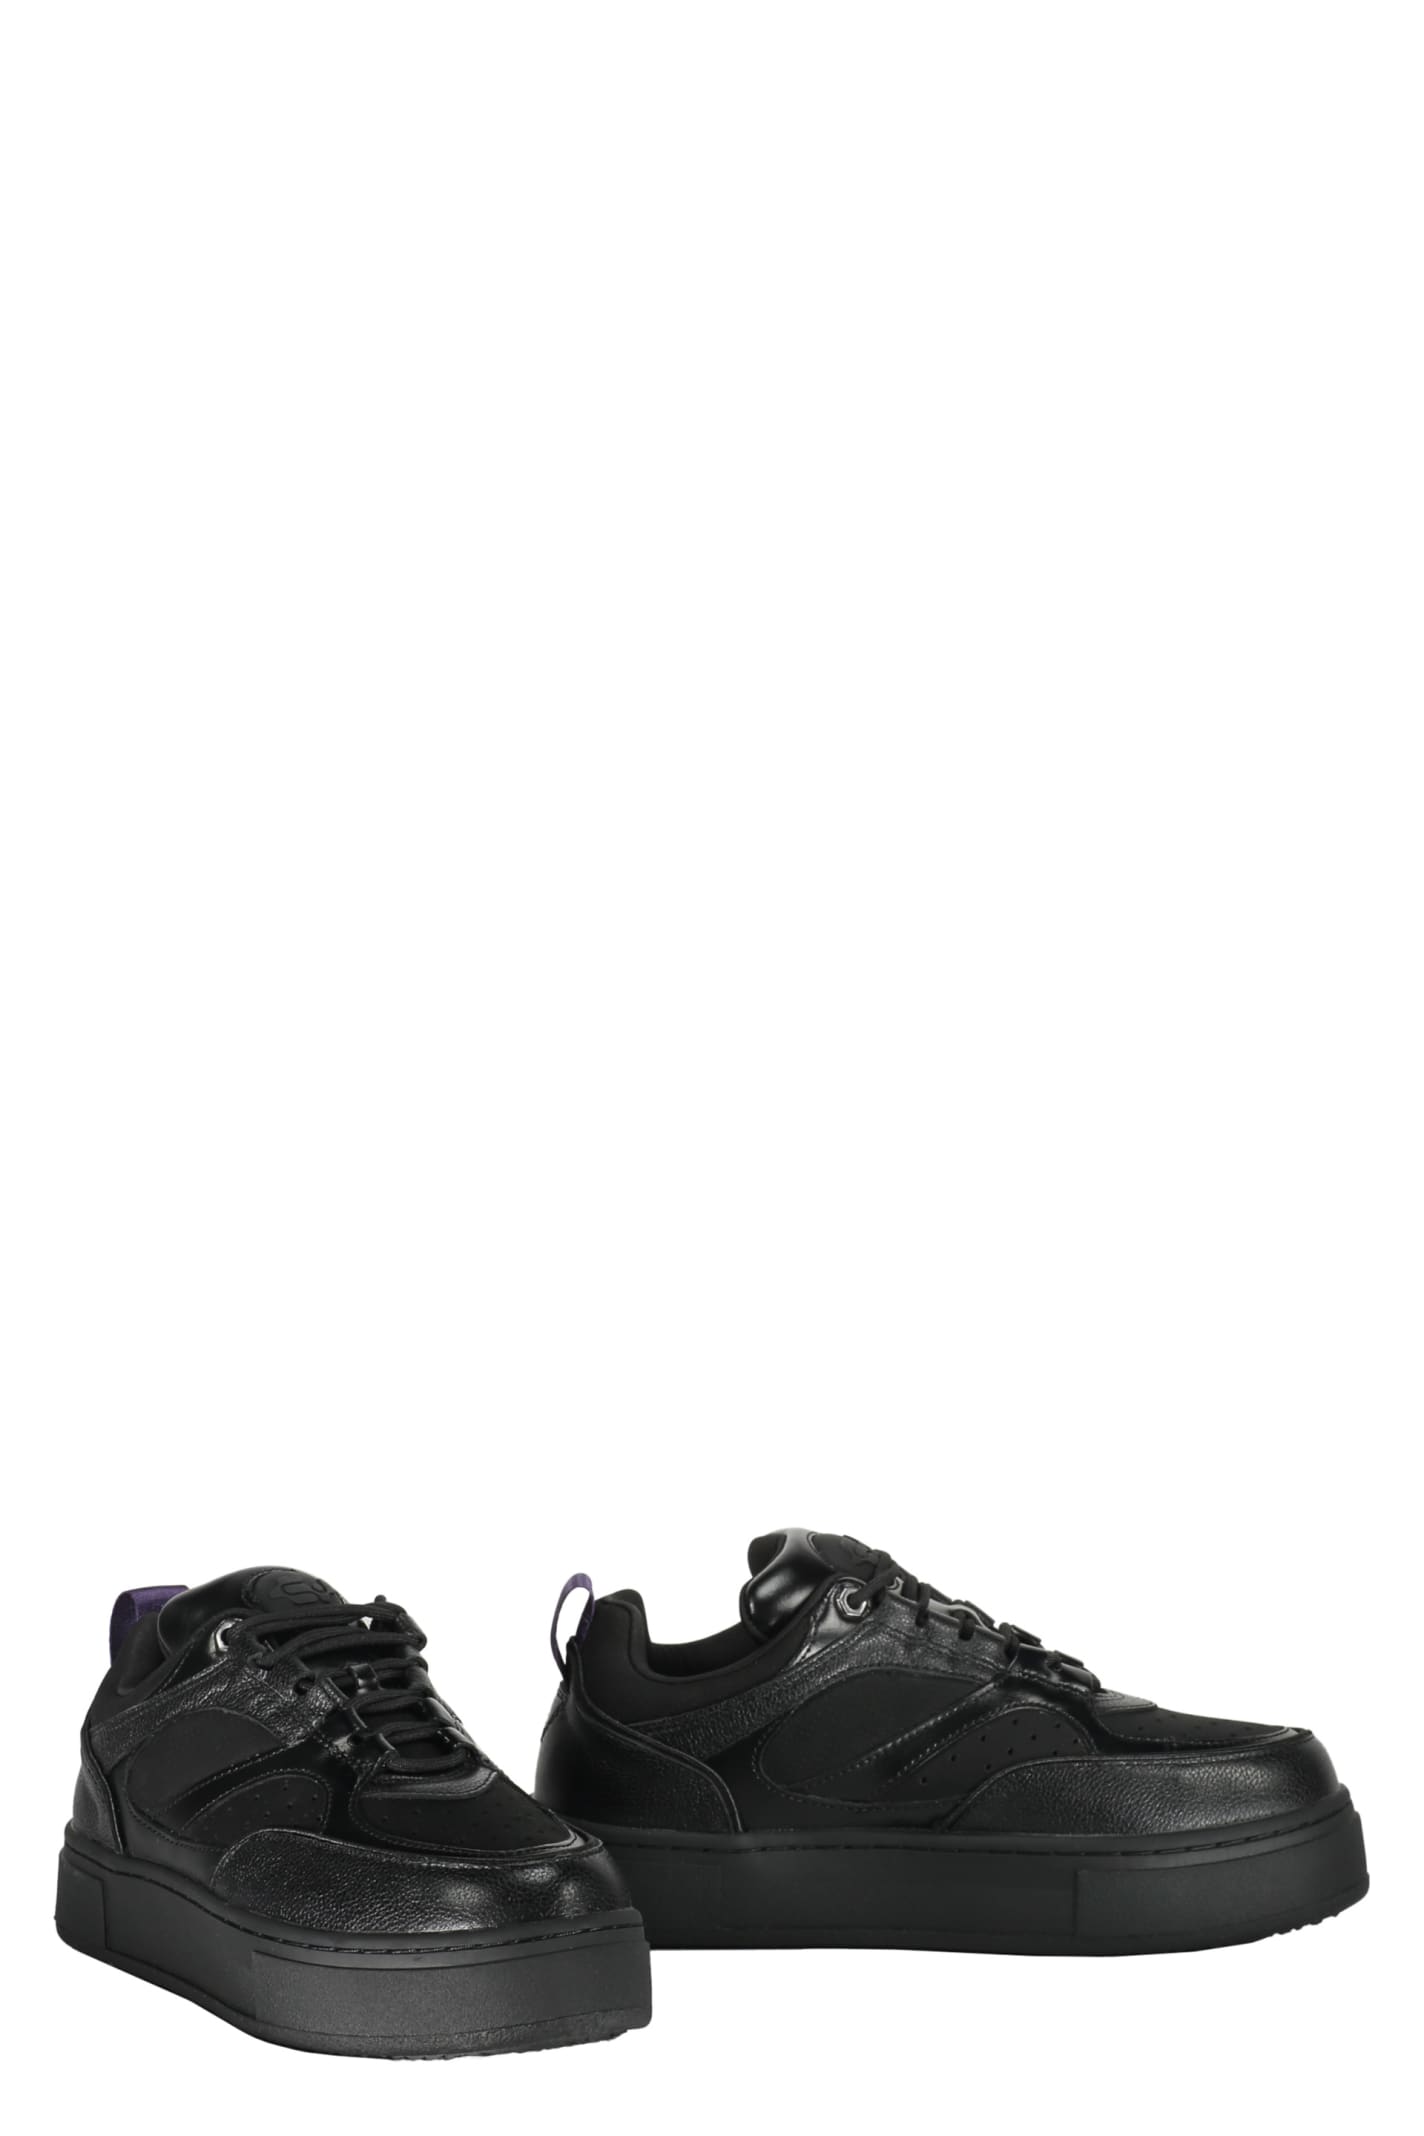 Shop Eytys Sidney Sneakers In Black